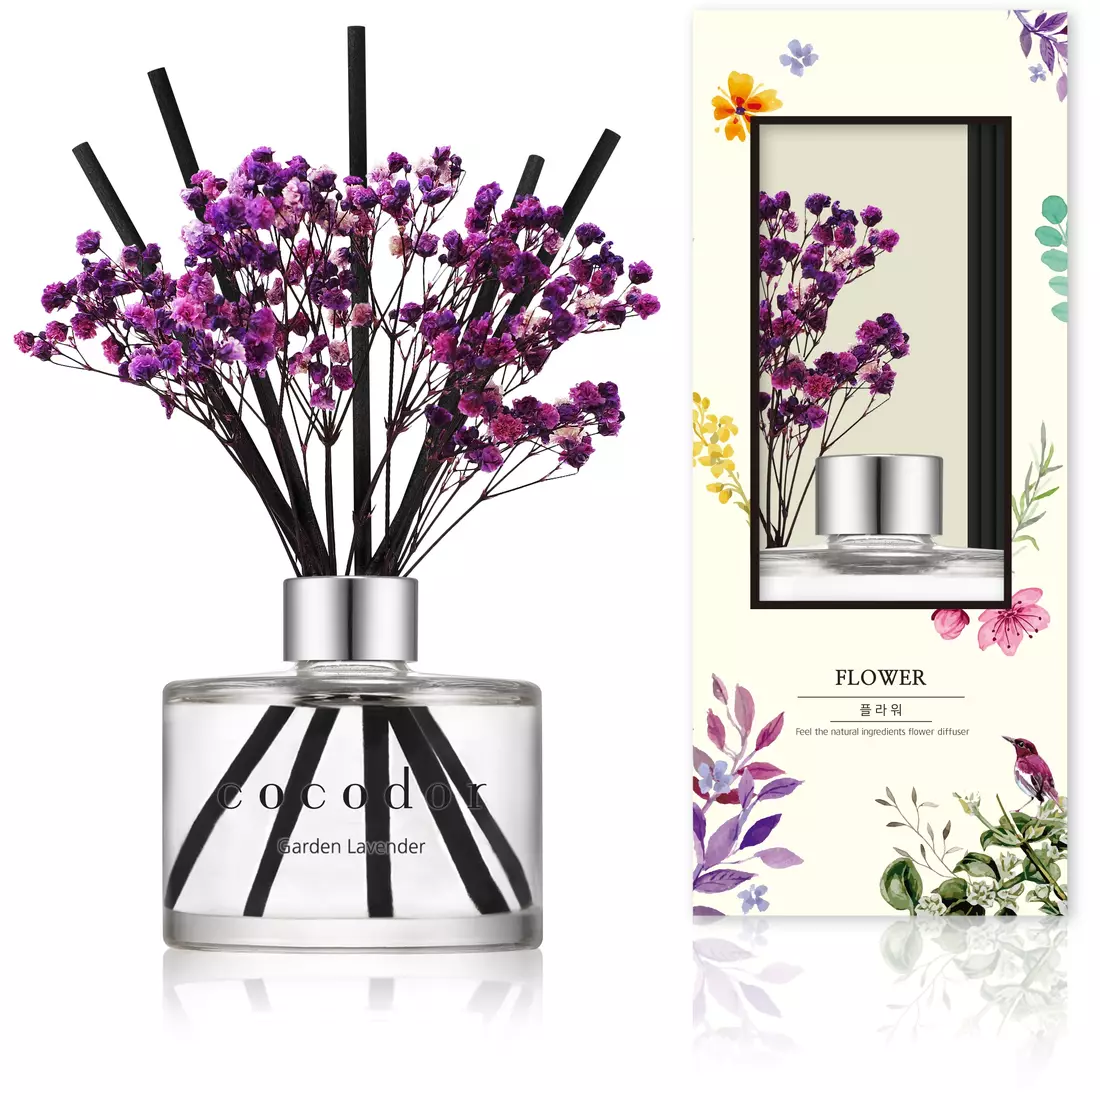 COCODOR dyfuzor zapachowy z patyczkami i kwiatami, garden lavender 120 ml